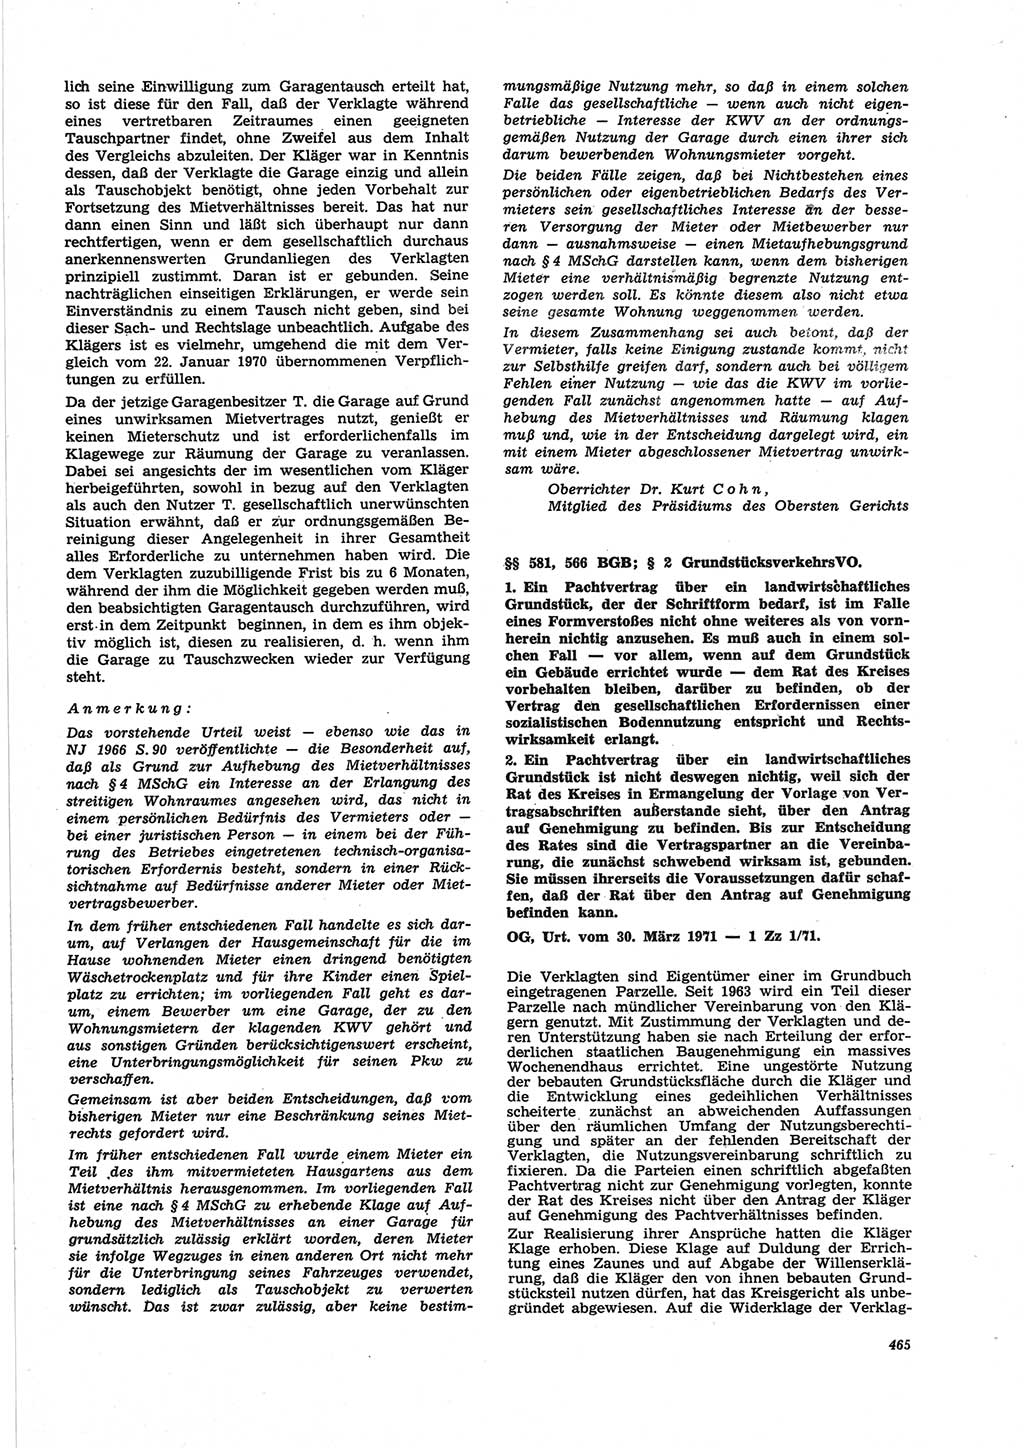 Neue Justiz (NJ), Zeitschrift für Recht und Rechtswissenschaft [Deutsche Demokratische Republik (DDR)], 25. Jahrgang 1971, Seite 465 (NJ DDR 1971, S. 465)